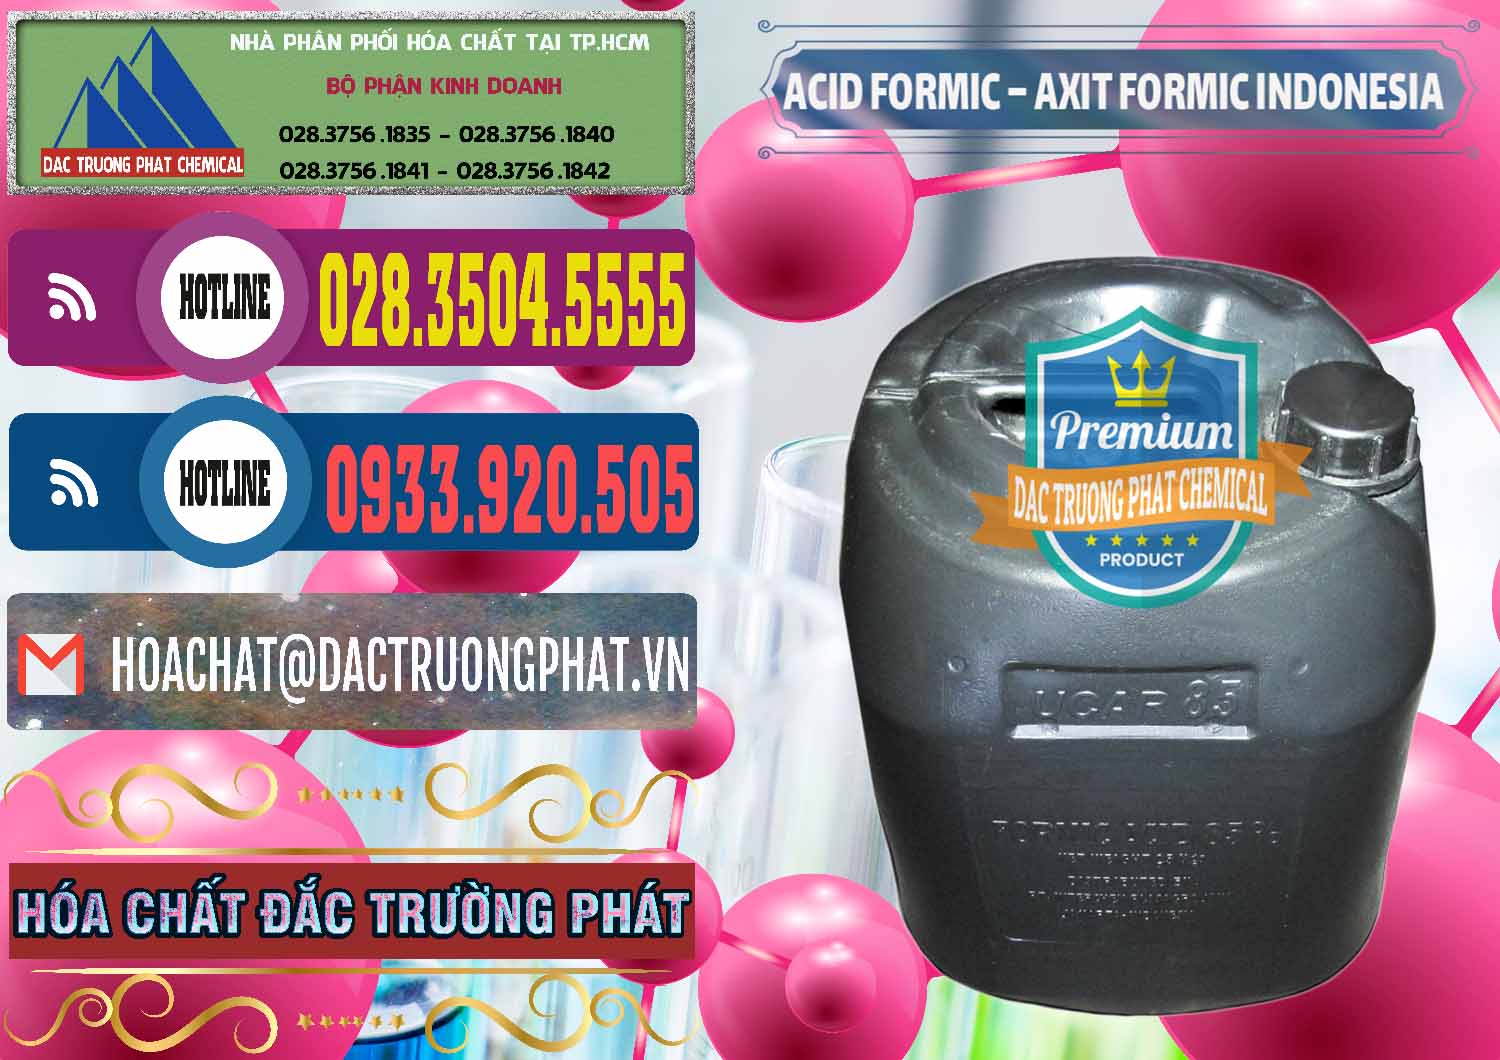 Nhà cung ứng và bán Acid Formic - Axit Formic Indonesia - 0026 - Nơi chuyên nhập khẩu & cung cấp hóa chất tại TP.HCM - muabanhoachat.com.vn